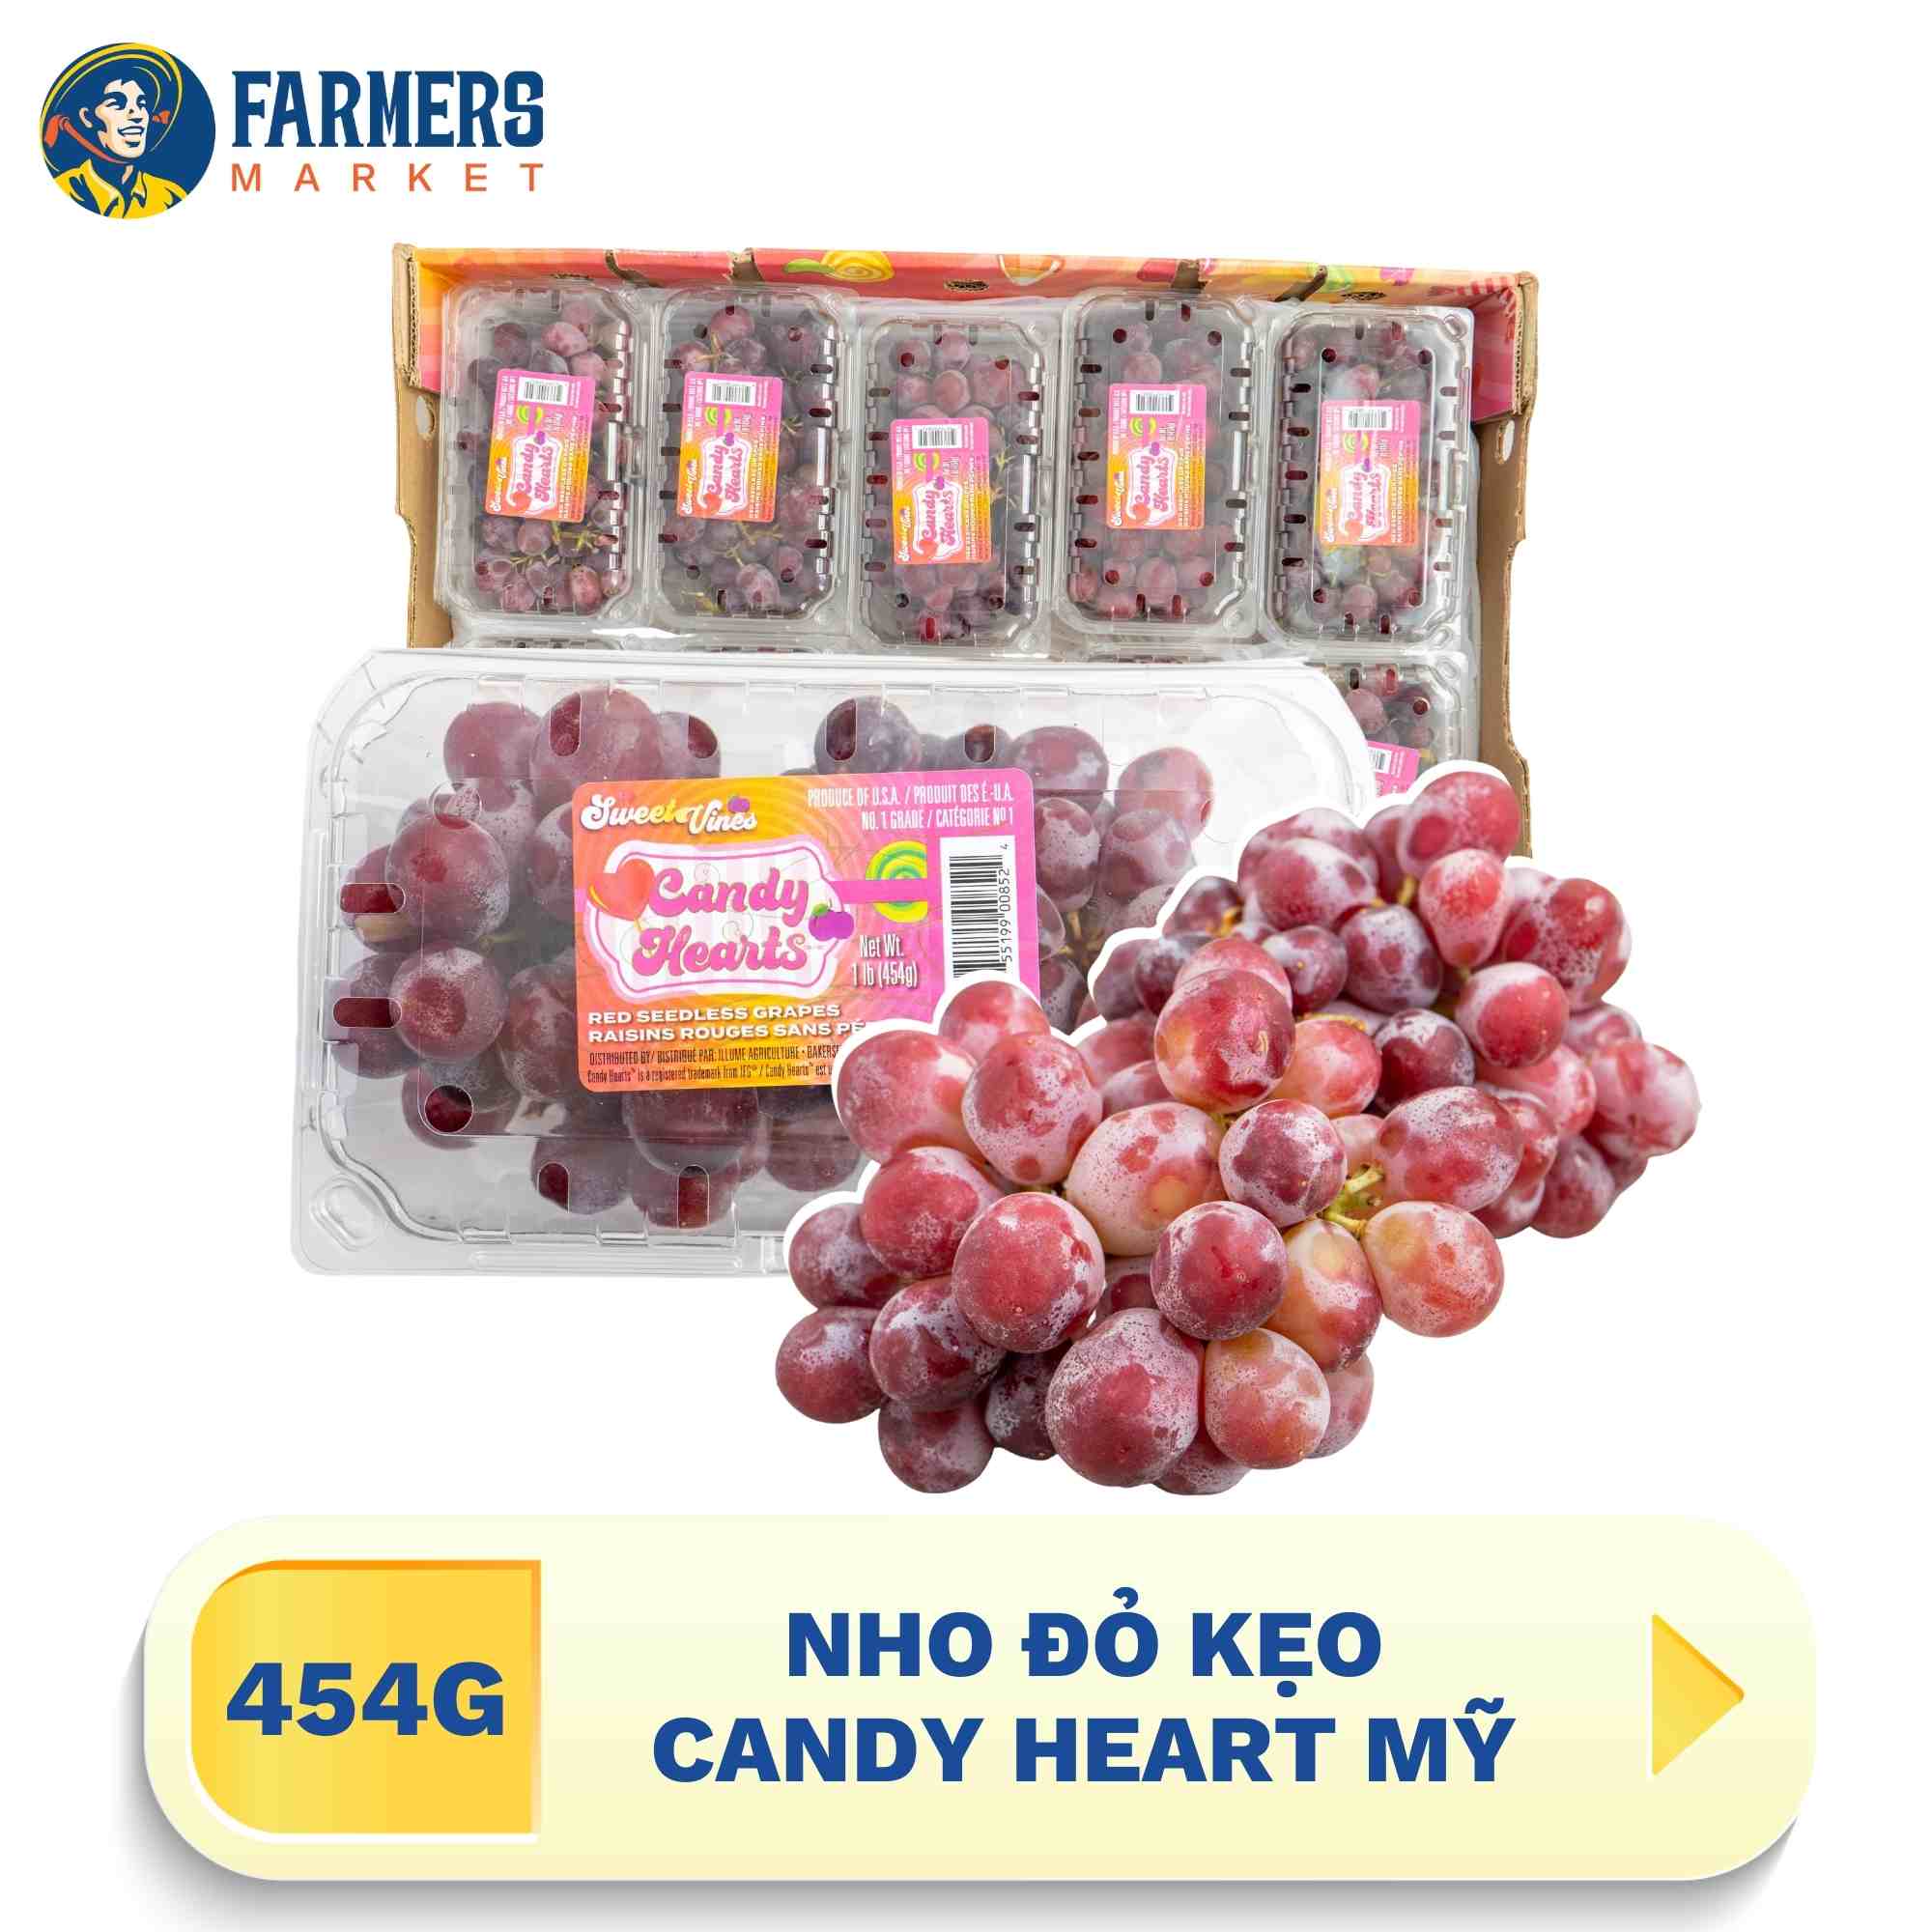 Nho đỏ kẹo Candy Heart Mỹ- Chùm đầy trái